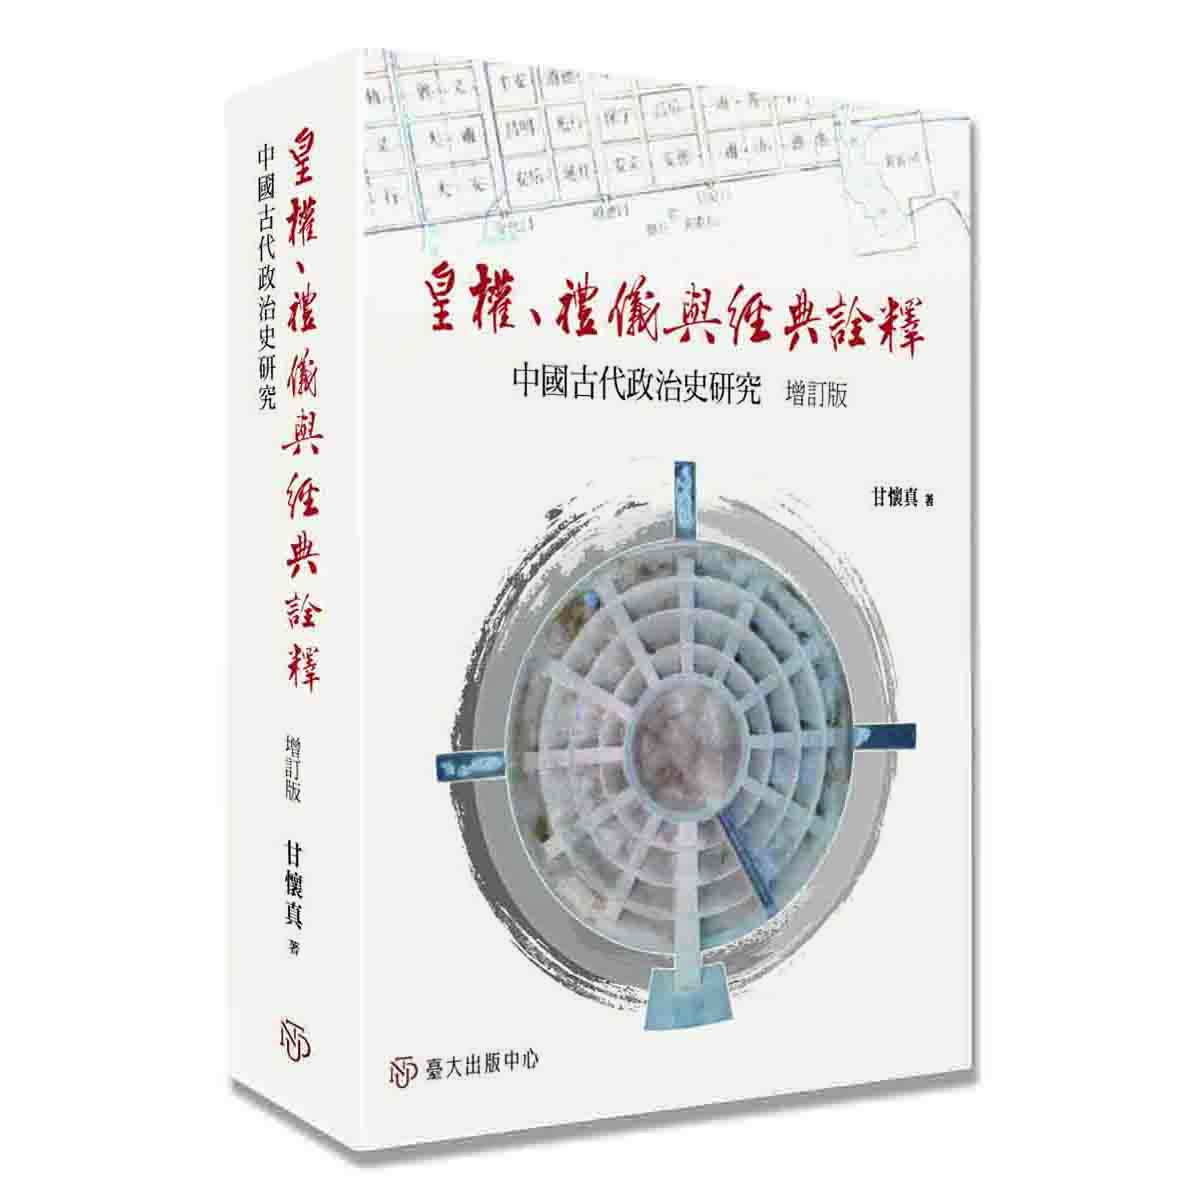 《皇權、禮儀與經典詮釋(增訂版)》探究中國古代皇帝制度與皇權的方方面面